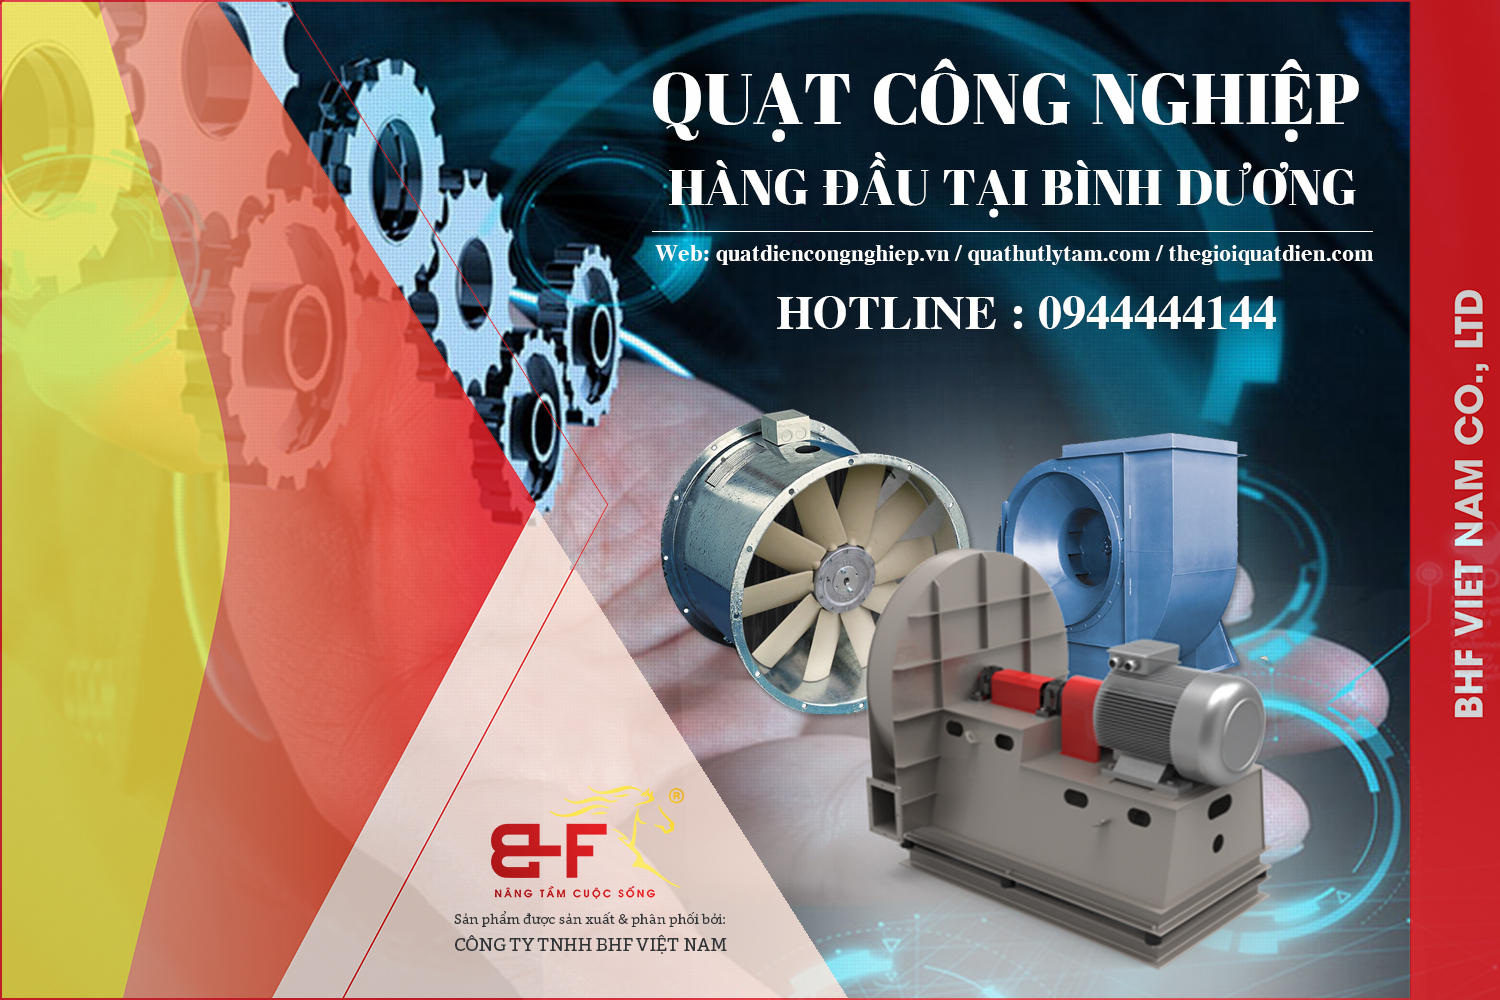 Đơn vị cũng cấp quạt công nghiệp chính hãng tại Quảng Ngãi - Công ty BHf Việt Nam